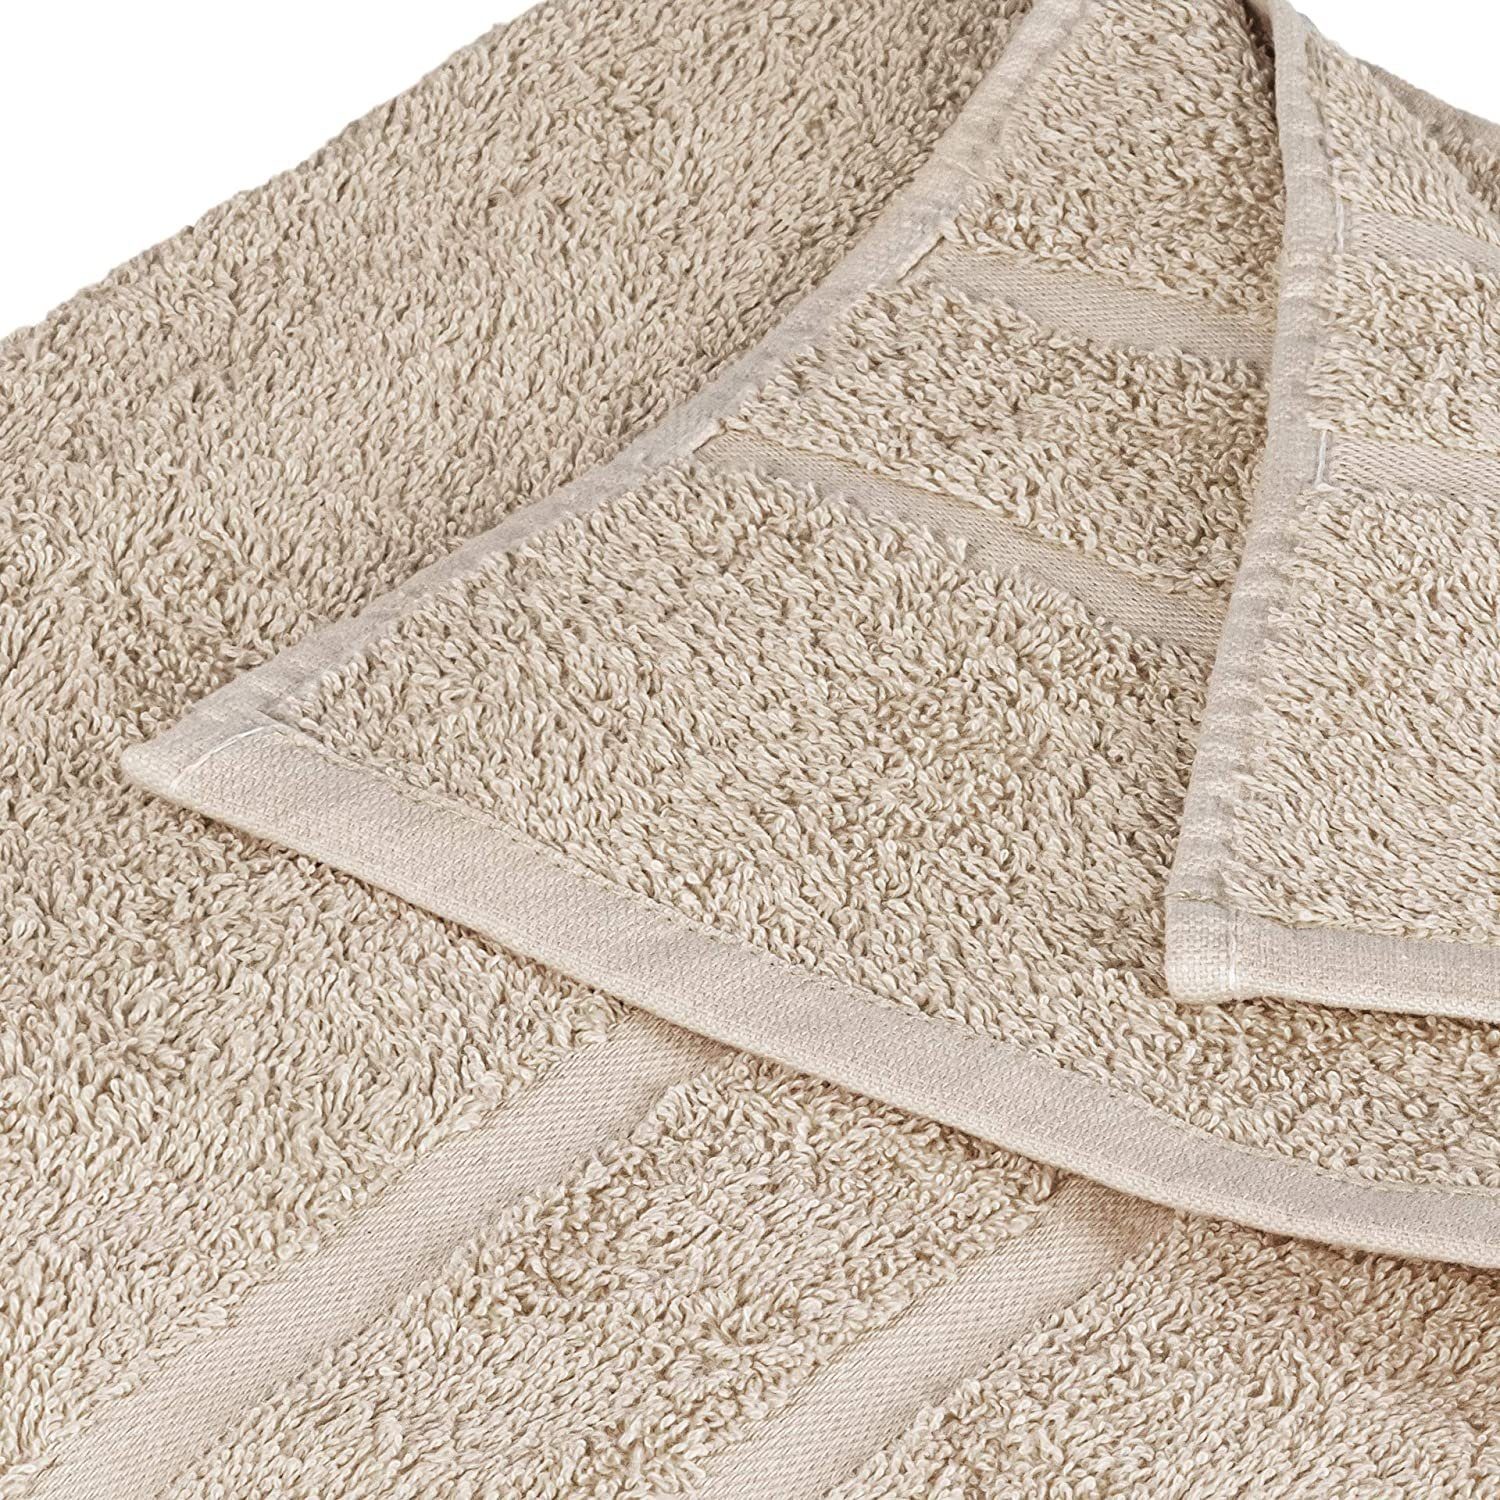 StickandShine Handtuch Set 2x Gästehandtuch Farben in 6er SET Frottee Sand Baumwolle (6 500 100% Handtücher GSM GSM 100% 4x 500 Handtuch Teilig) als Pack, Baumwolle verschiedenen